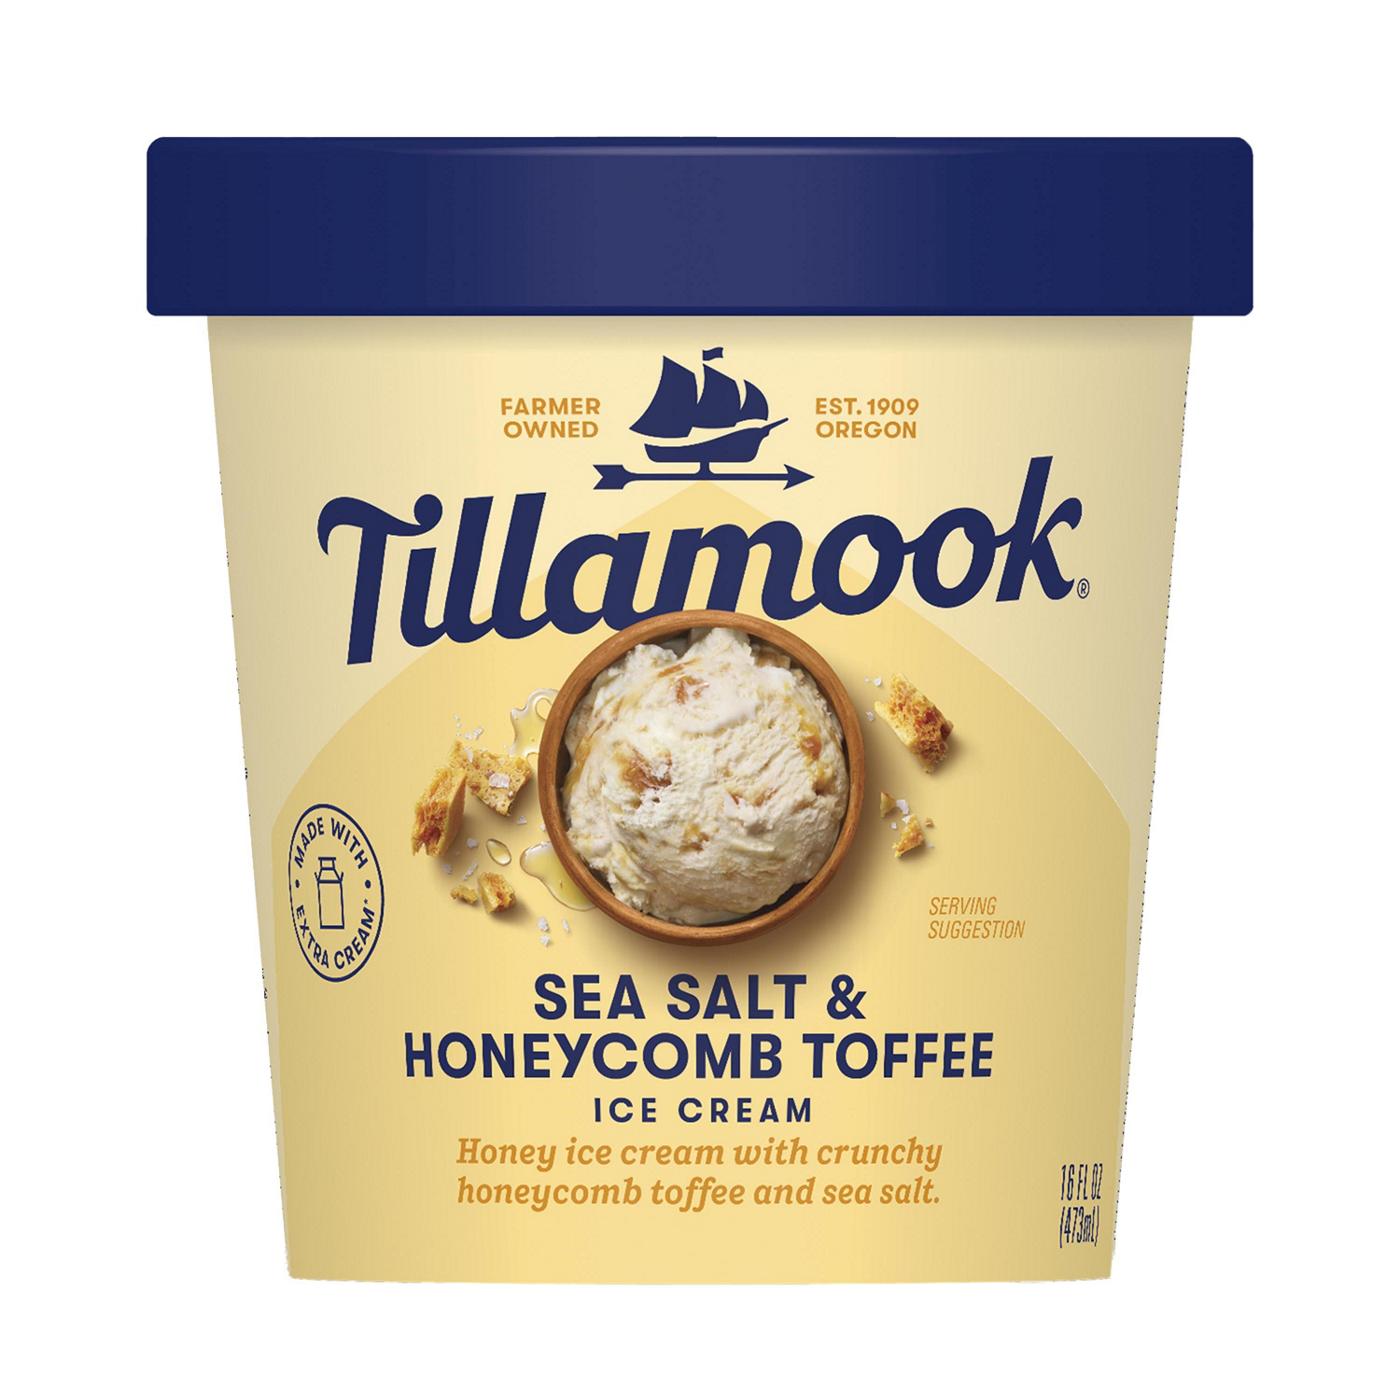 Tillamook Sea Salt & Honeycomb Toffee Ice Cream; image 1 of 2